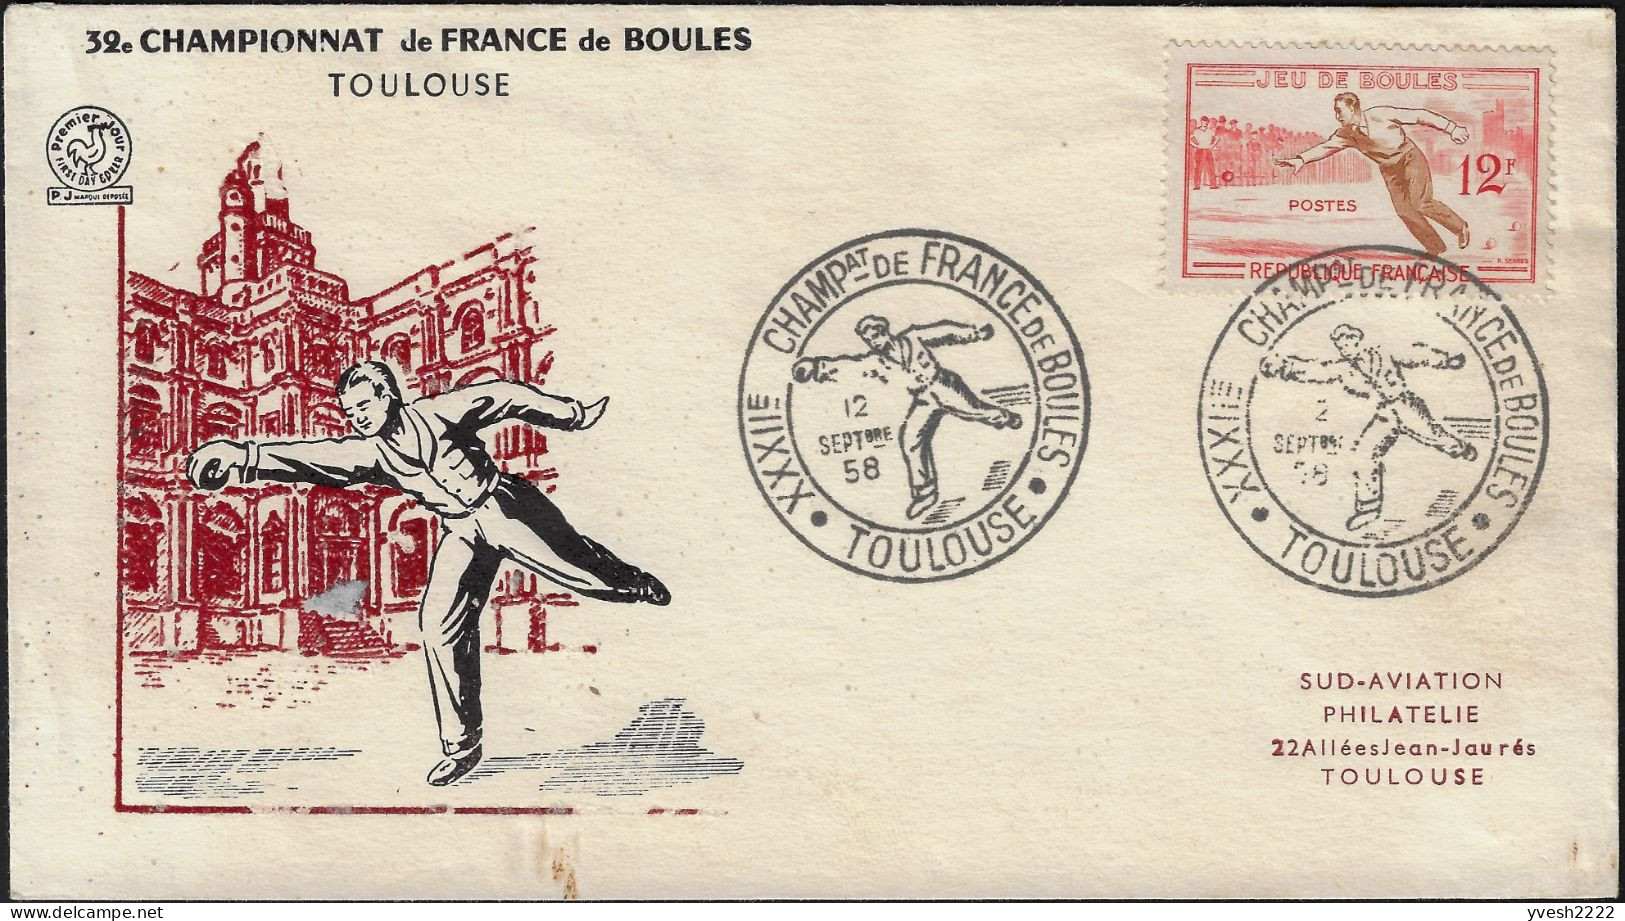 France 1958 Y&T 1161. Enveloppe, Jeu De Boules. Championnat De France, Toulouse - Bocce